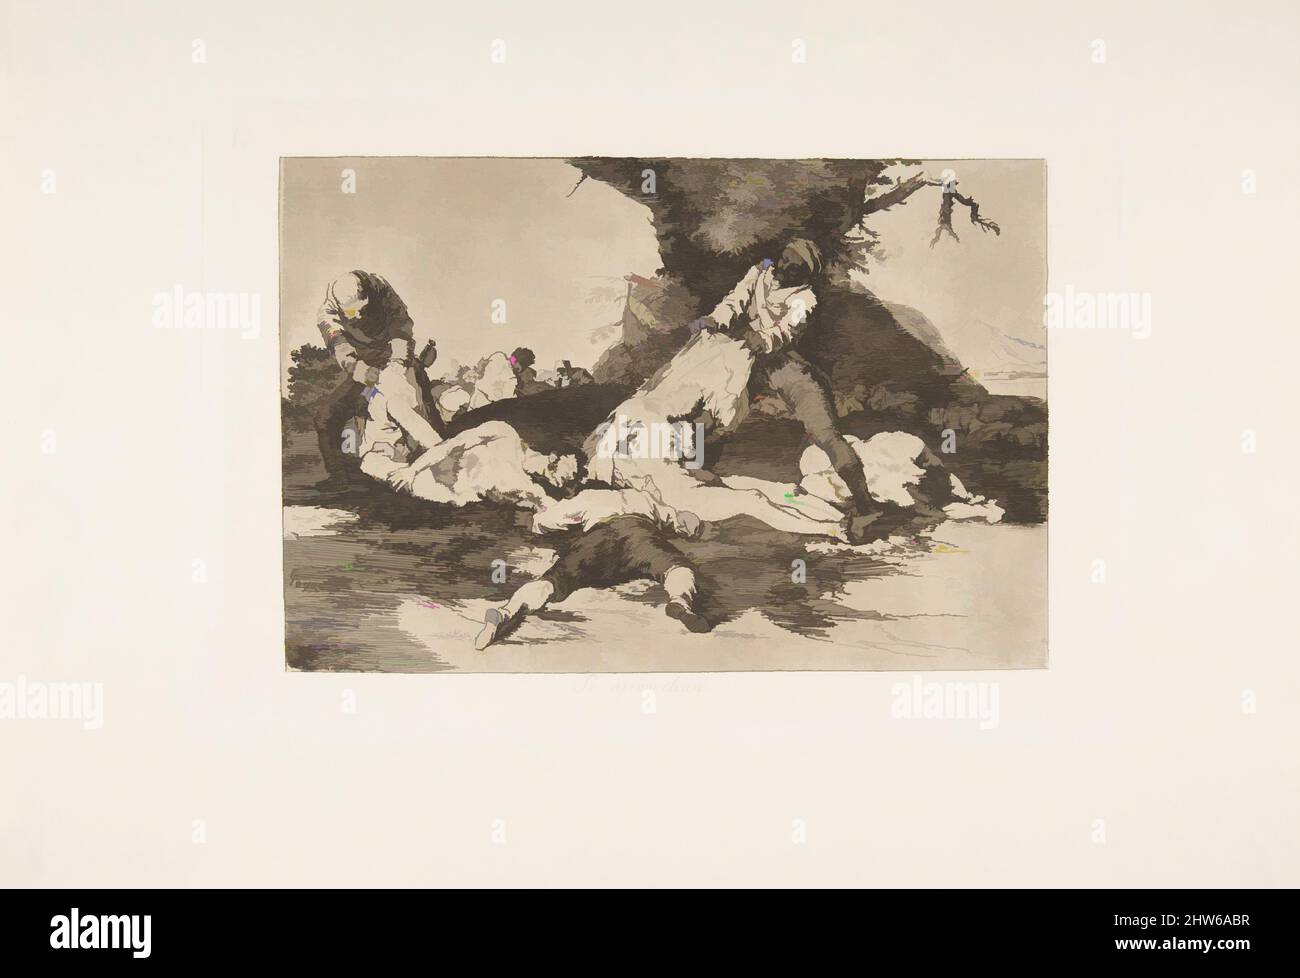 Art inspiré par la planche 16 de « les désastres de la guerre » (Los Desastres de la Guerra) : ils en font usage. » (Se aprovechan.), 1810 (publié en 1863), Etching, lavis, point sec, burin et burnisher, plaque : 6 5/16 × 9 1/4 in. (16 × 23,5 cm), Prints, Goya (Francisco de Goya y Lucientes) (, oeuvres classiques modernisées par Artotop avec un peu de modernité. Formes, couleur et valeur, impact visuel accrocheur sur l'art émotions par la liberté d'œuvres d'art d'une manière contemporaine. Un message intemporel qui cherche une nouvelle direction créative. Artistes qui se tournent vers le support numérique et créent le NFT Artotop Banque D'Images